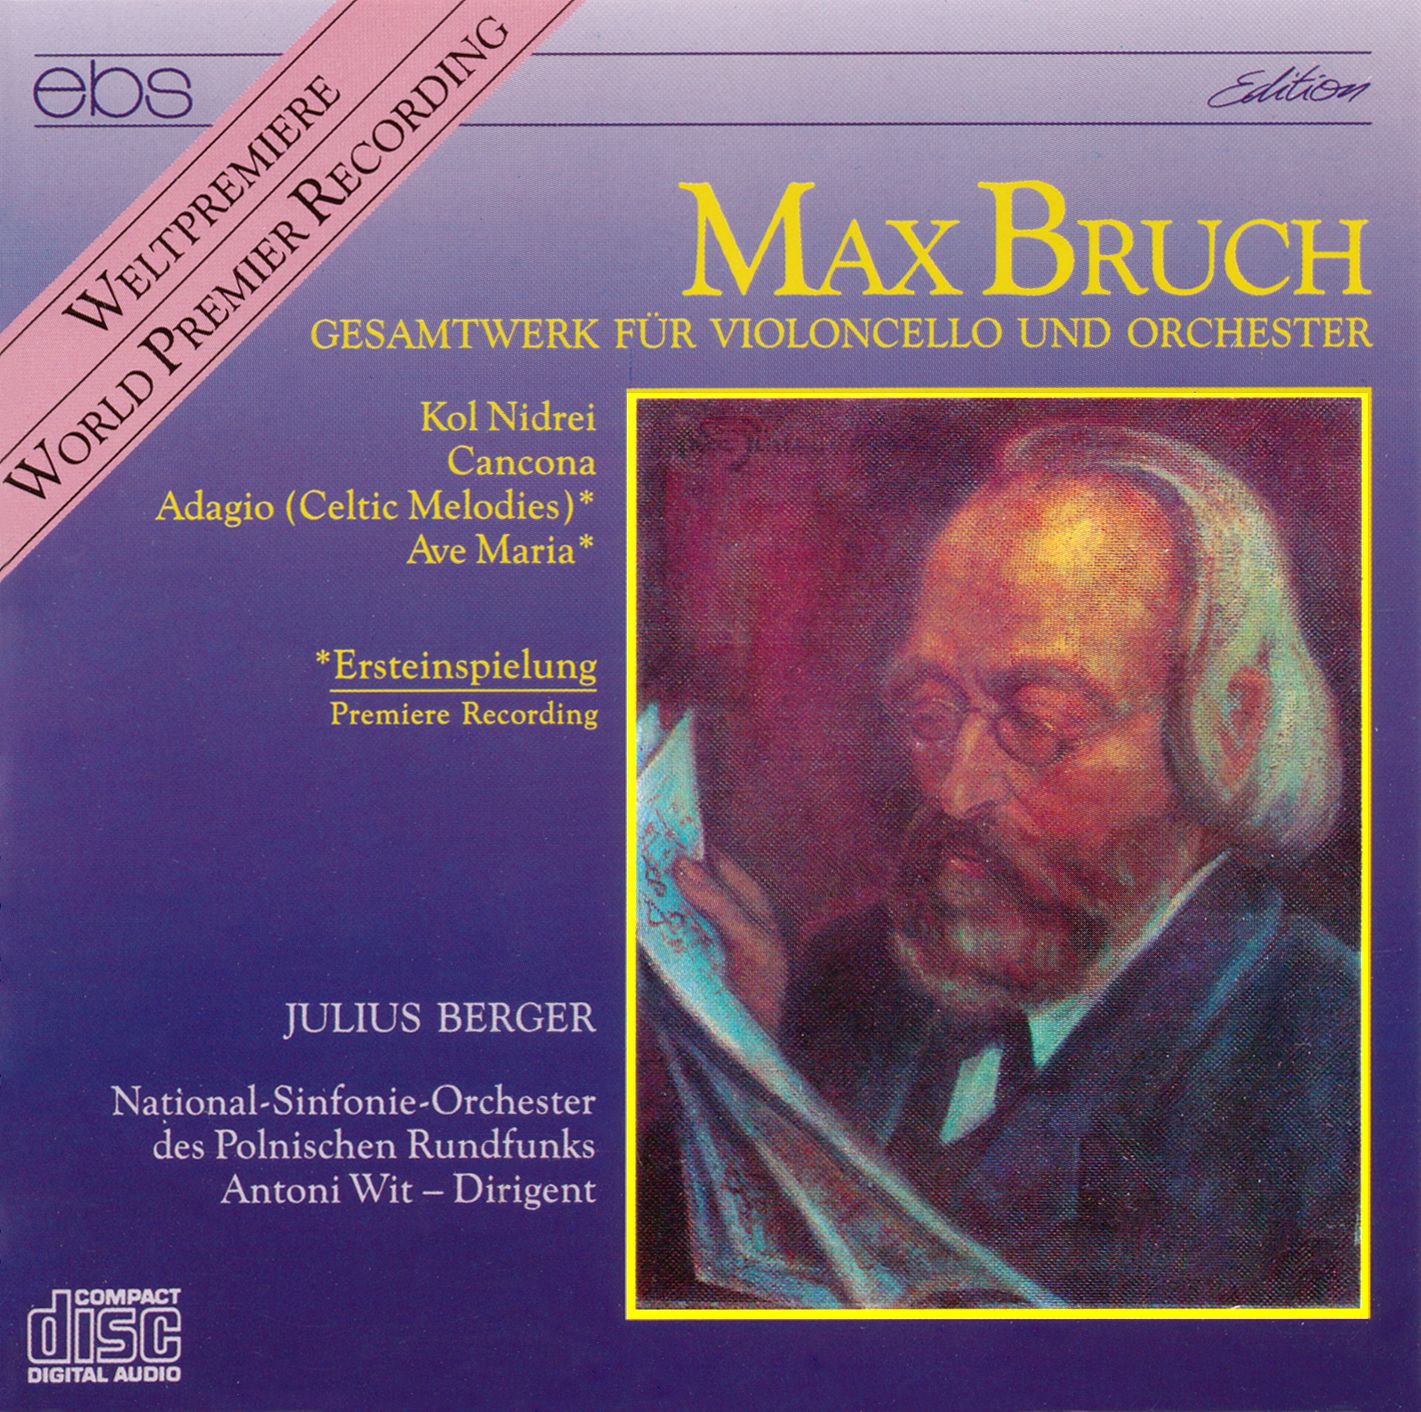 Max Bruch - Gesamtwerk für Violoncello